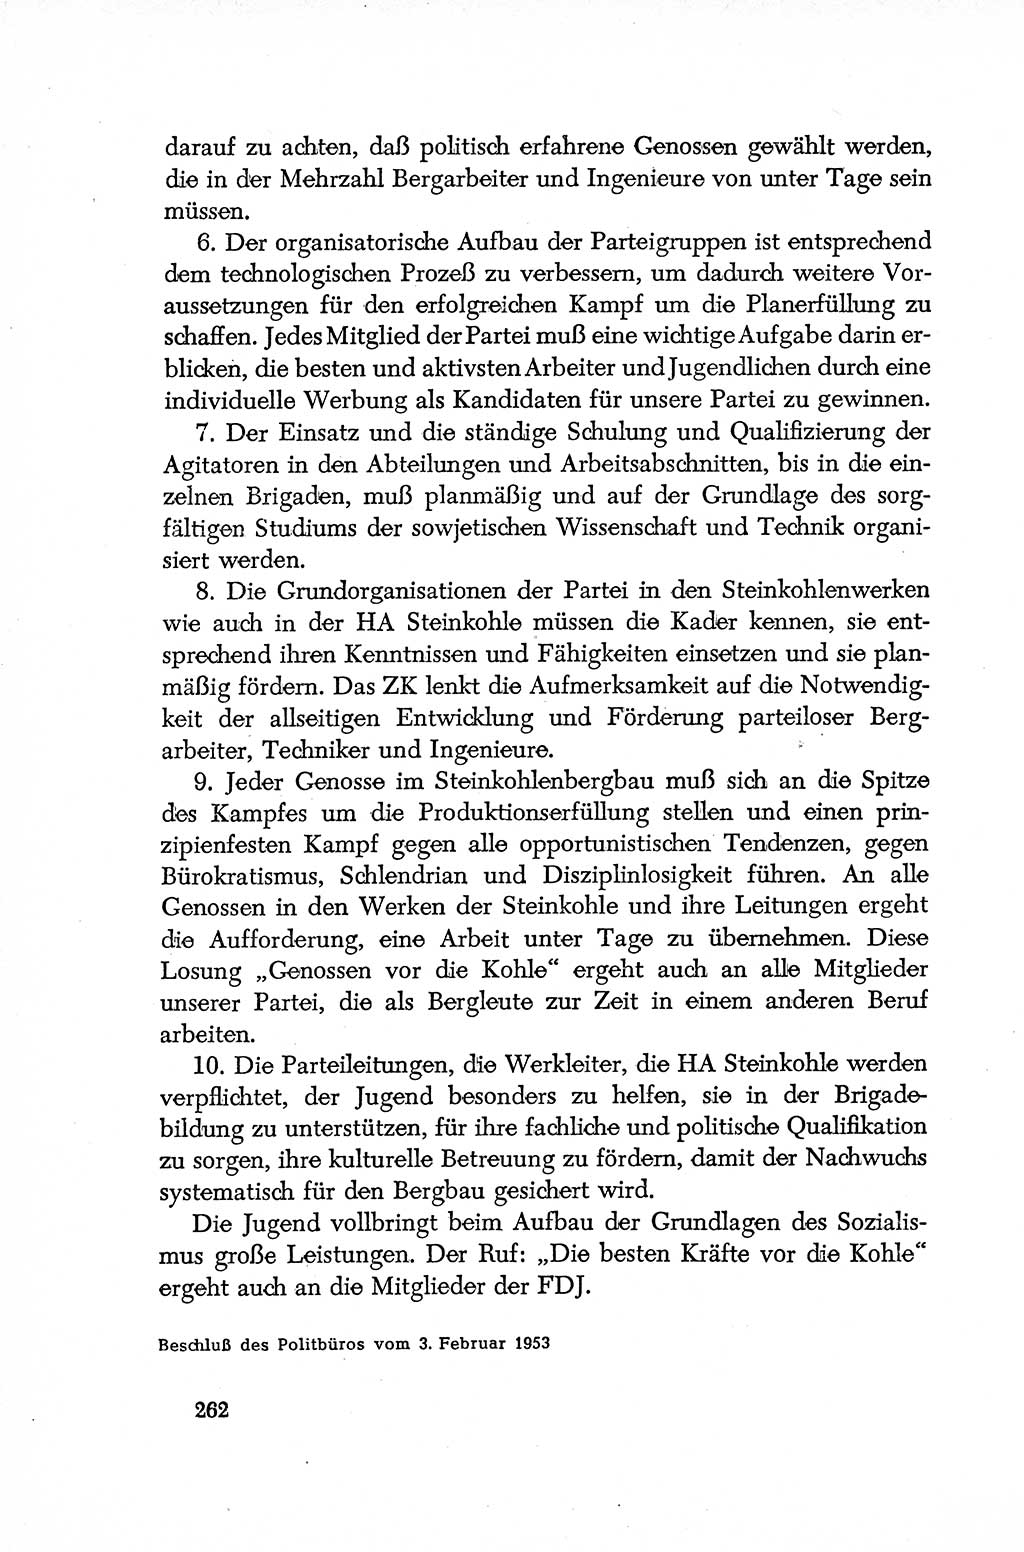 Dokumente der Sozialistischen Einheitspartei Deutschlands (SED) [Deutsche Demokratische Republik (DDR)] 1952-1953, Seite 262 (Dok. SED DDR 1952-1953, S. 262)